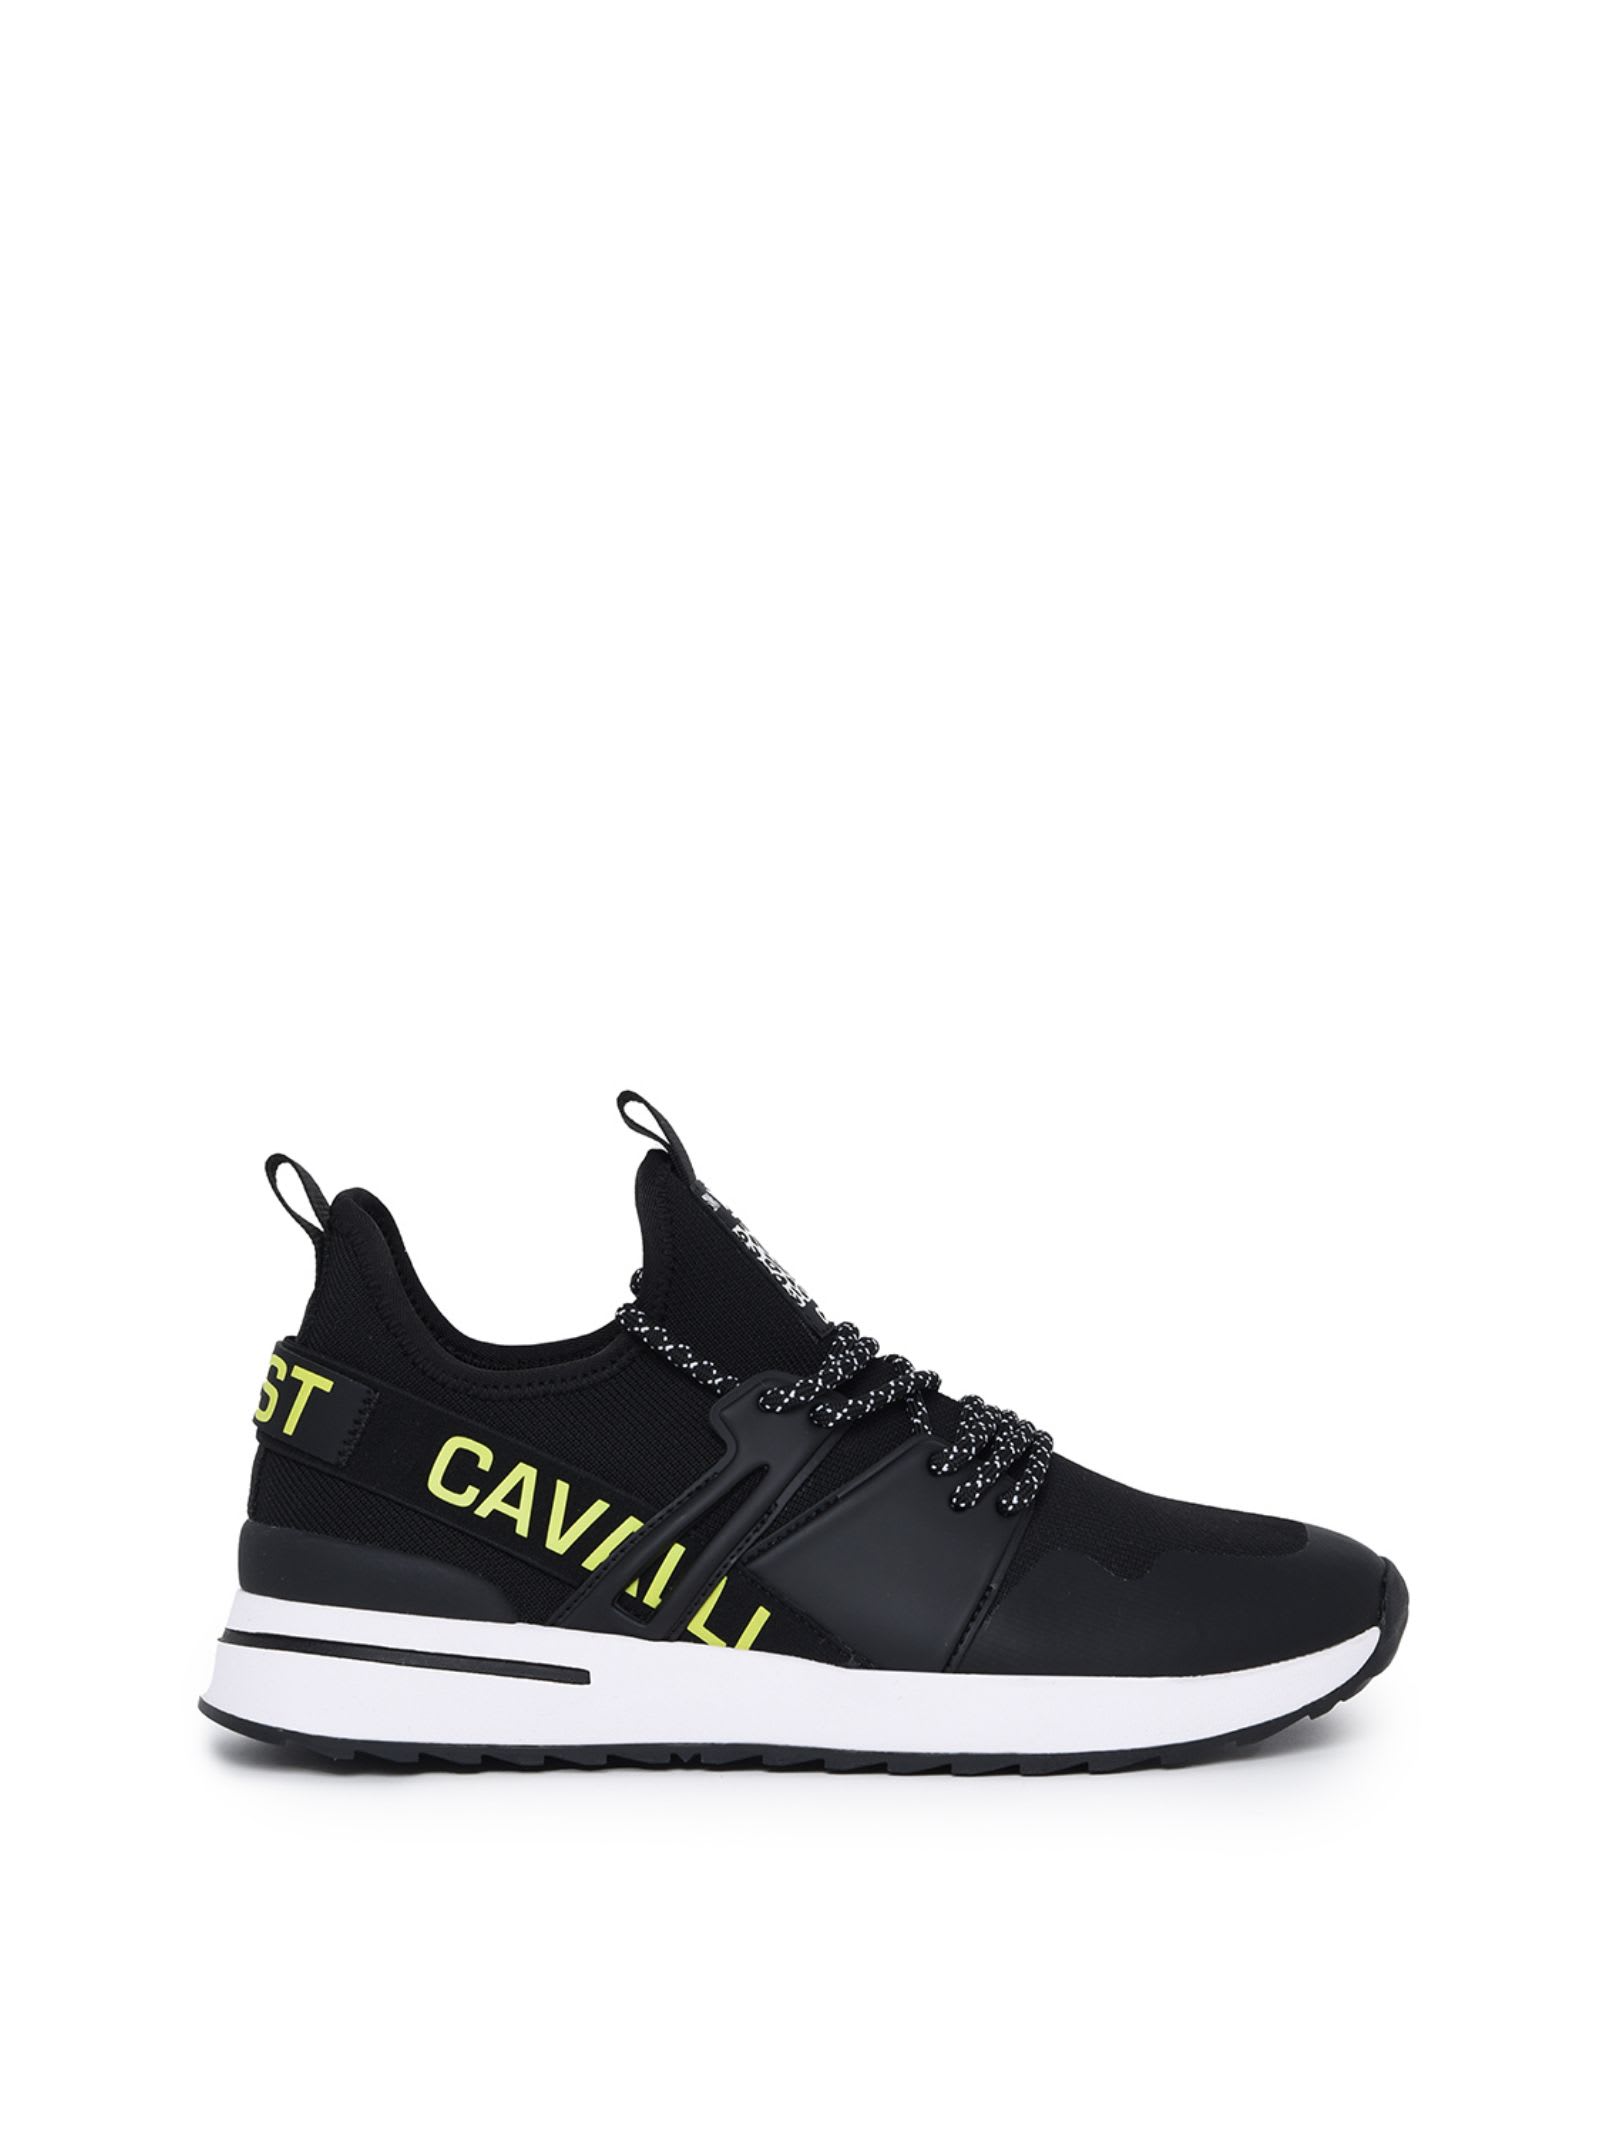 Roberto Cavalli Just Cavalli Shoes In Black